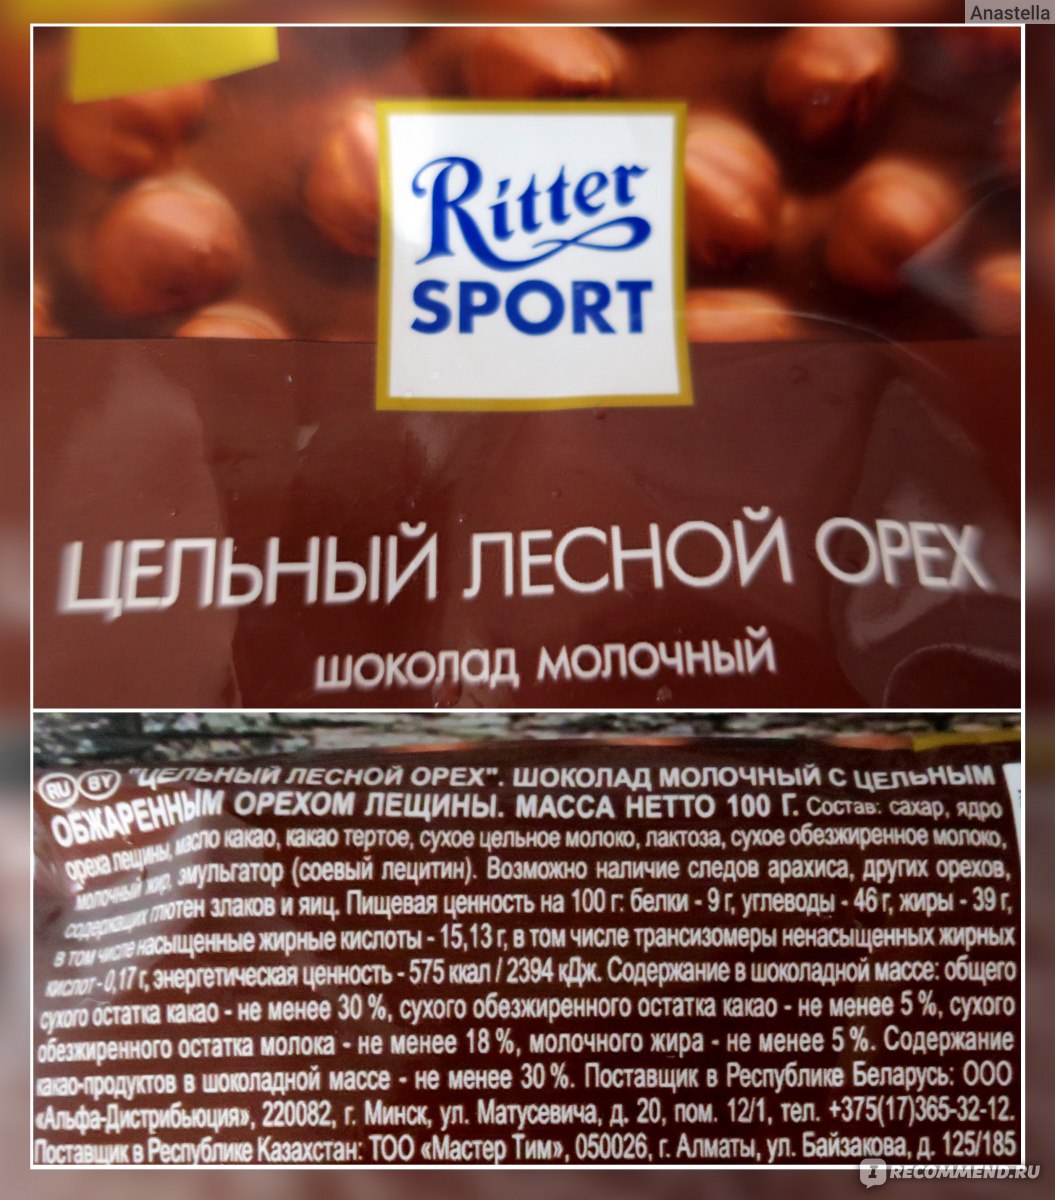 Шоколад Риттер спорт молочный цельный Лесной орех